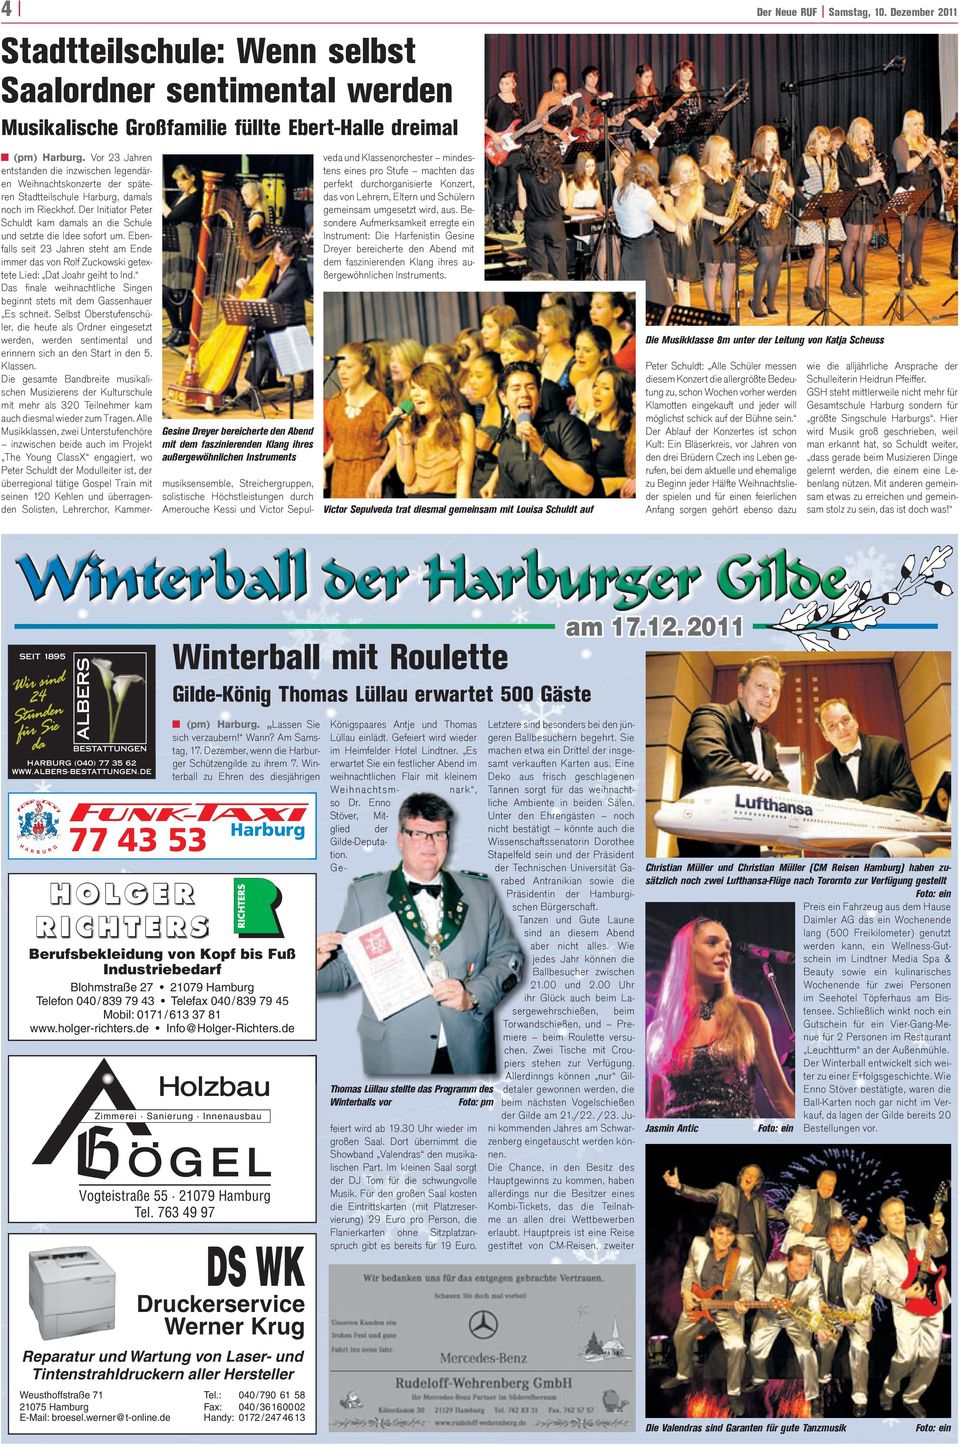 außergewöhnlichen Instruments (pm) Harburg. Vor 23 Jahren entstanden die inzwischen legendären Weihnachtskonzerte der späteren Stadtteilschule Harburg, damals noch im Rieckhof.